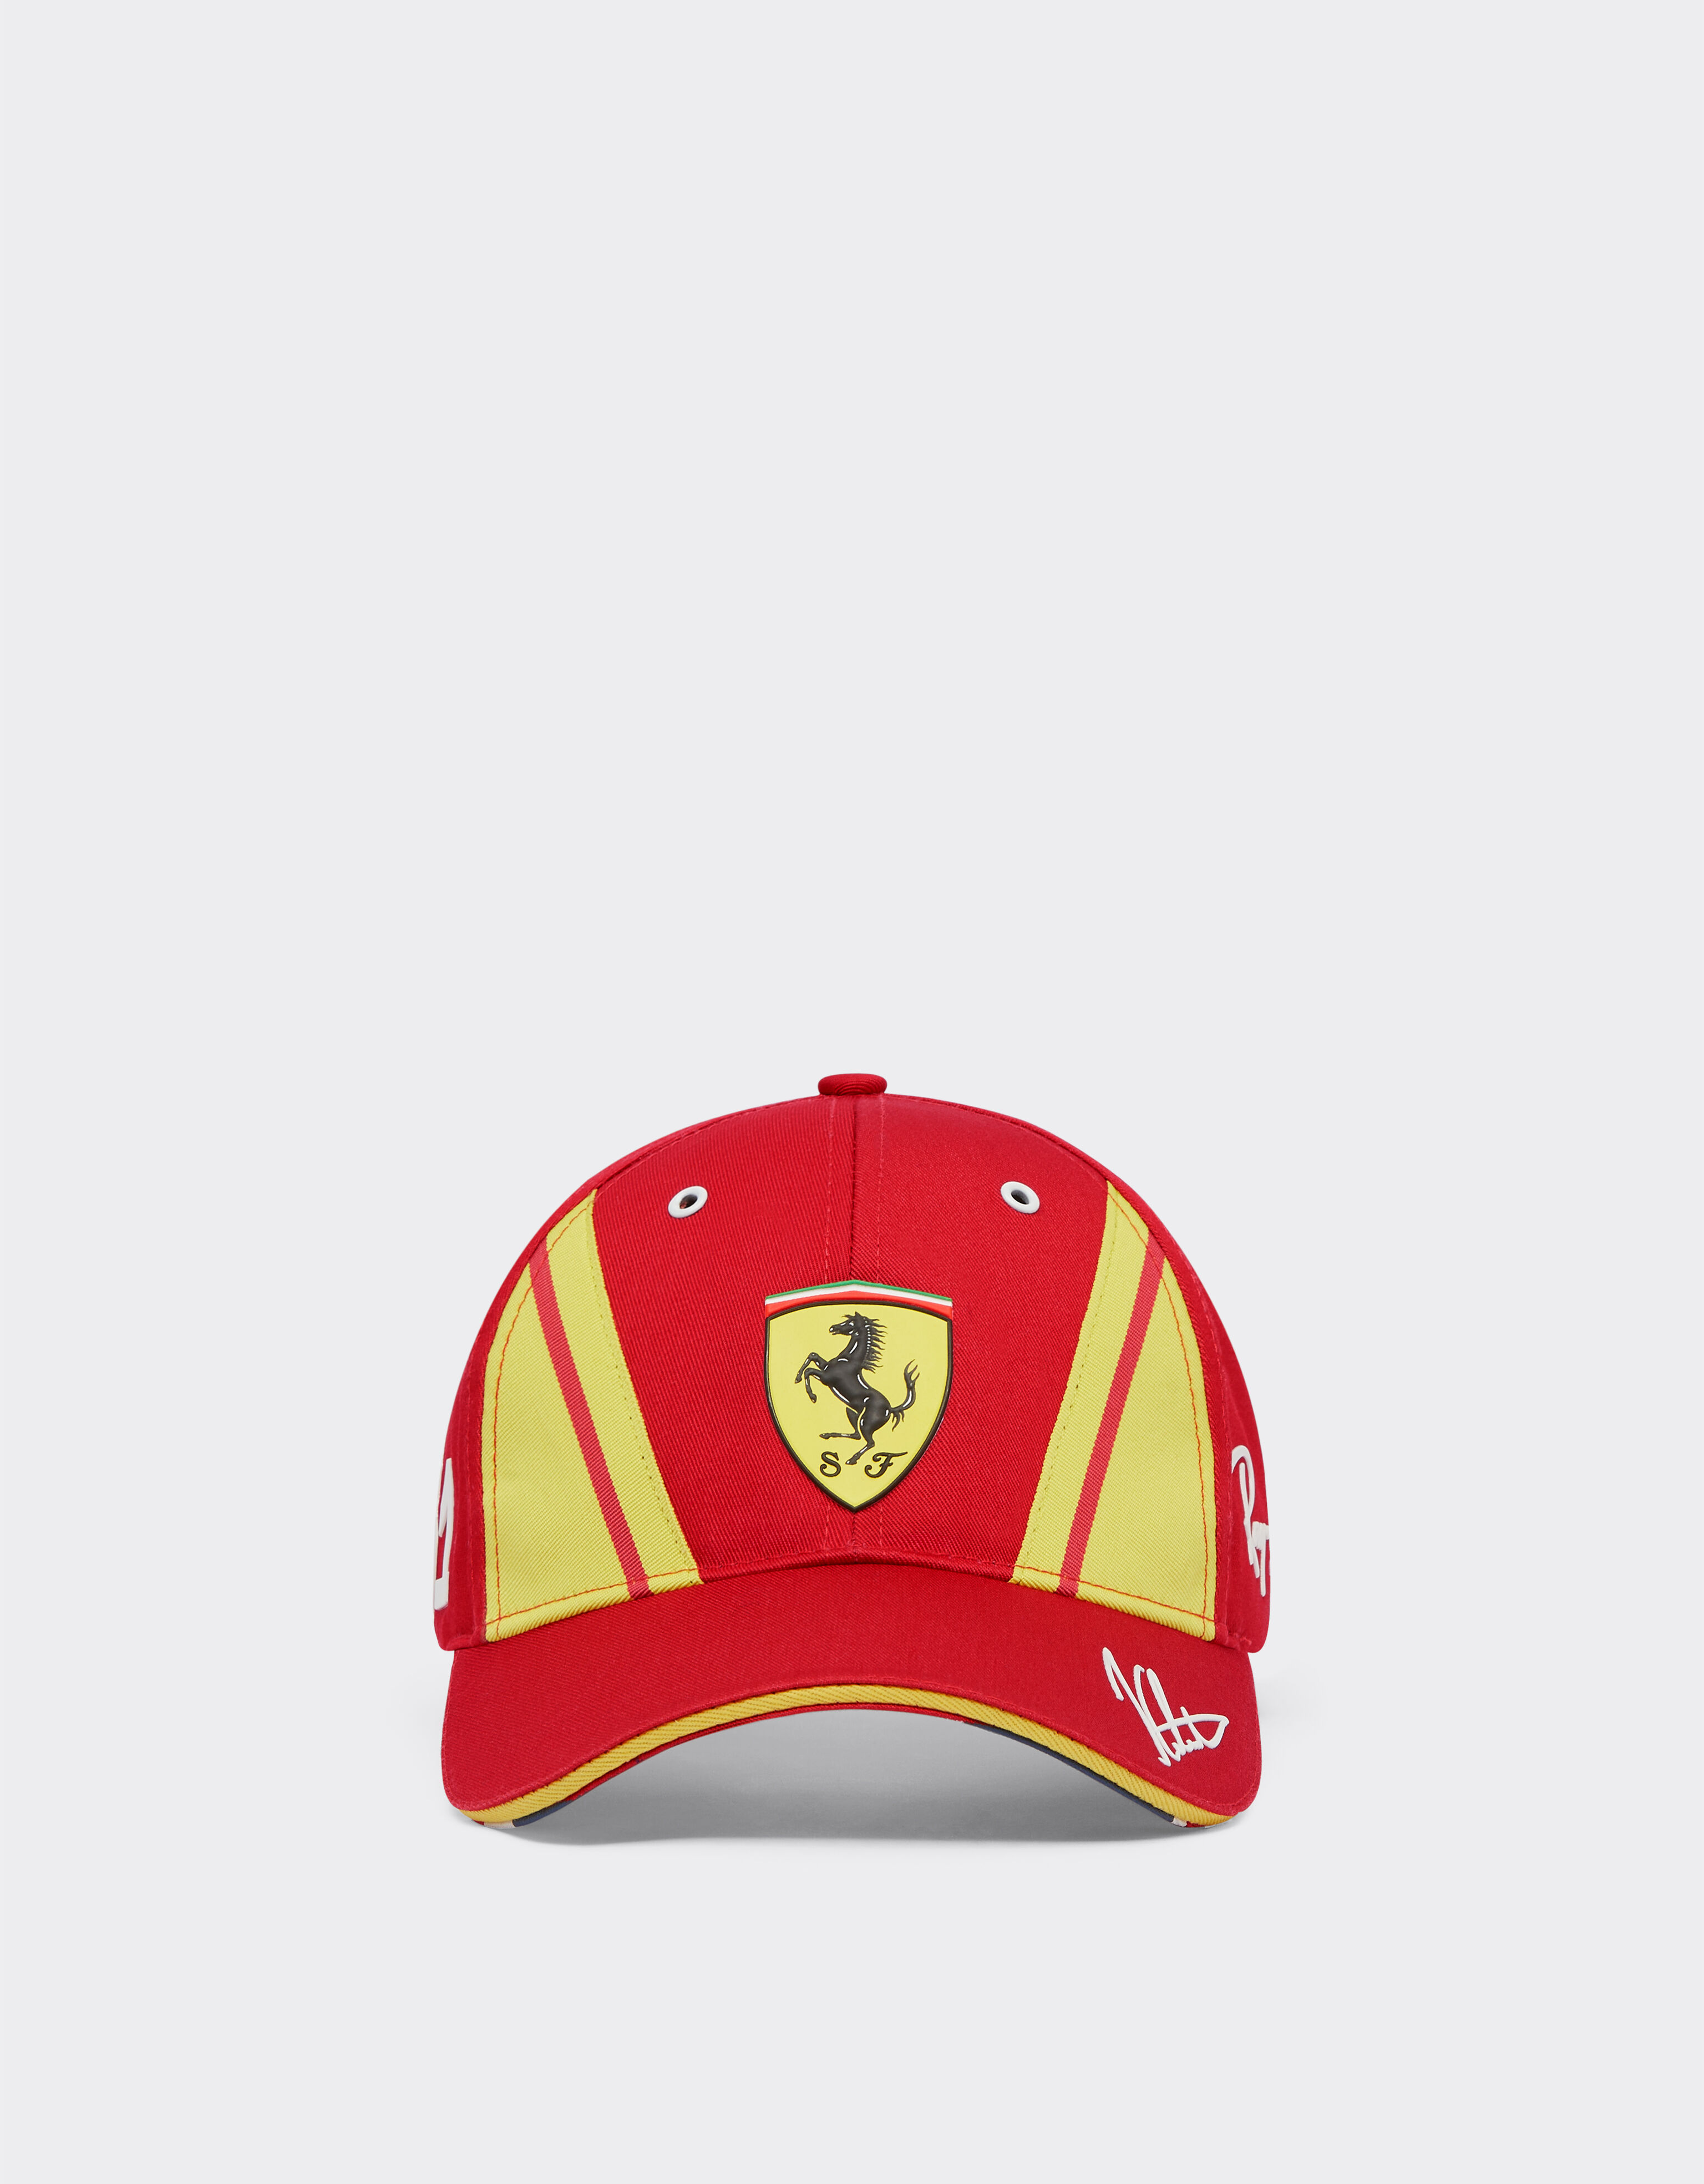 Ferrari Ferrari Calado Hypercar Hat - Limited Edition Red F1327f